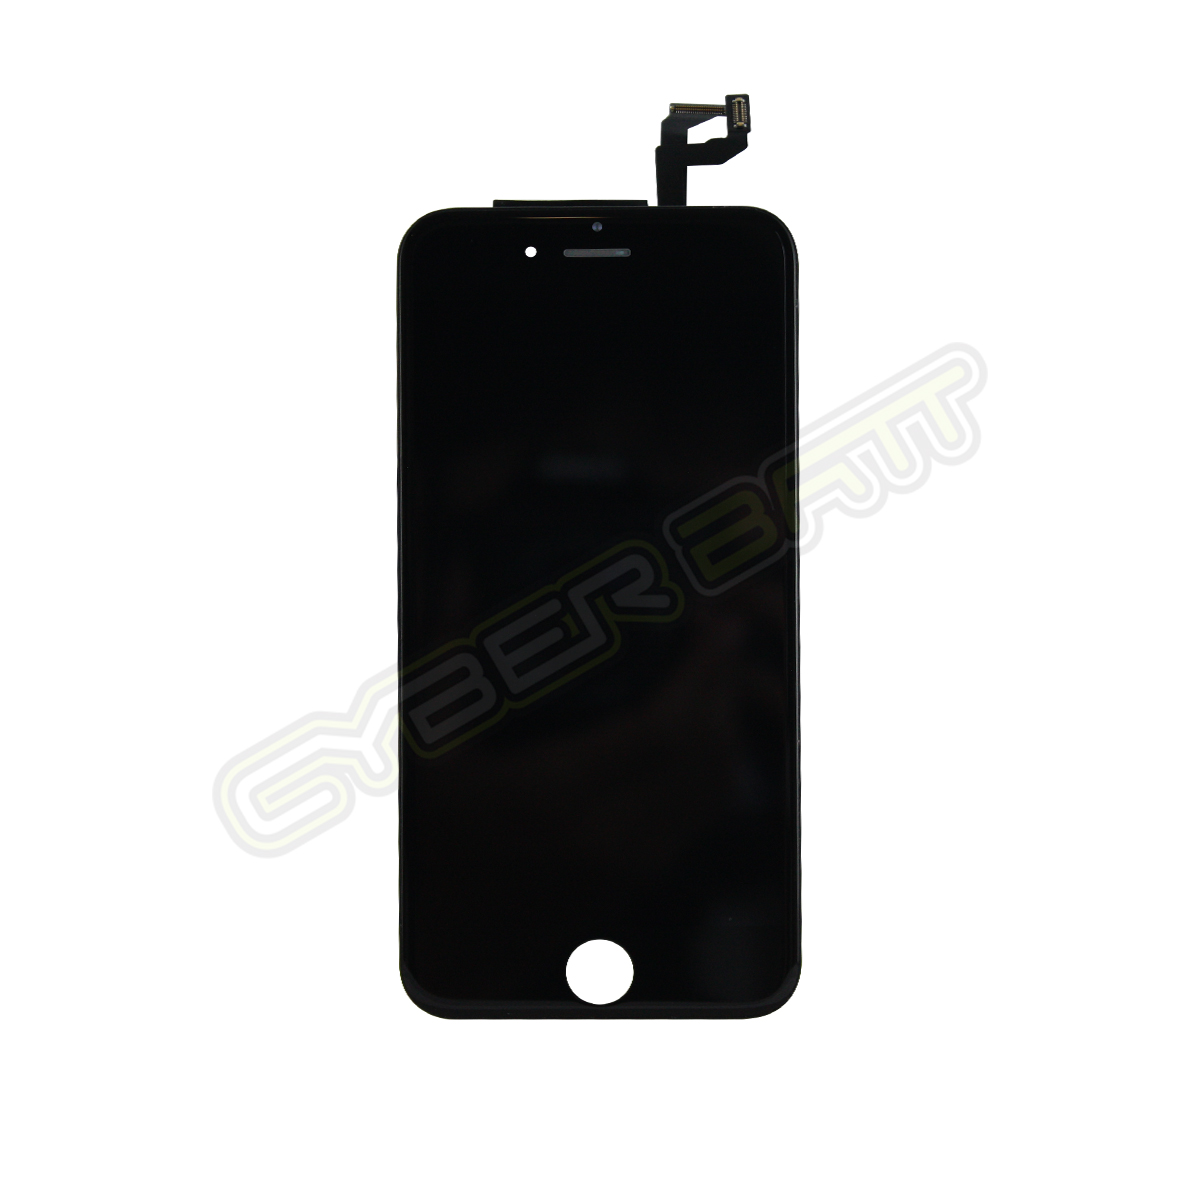 iPhone 6s LCD Black หน้าจอไอโฟน 6s สีดำ